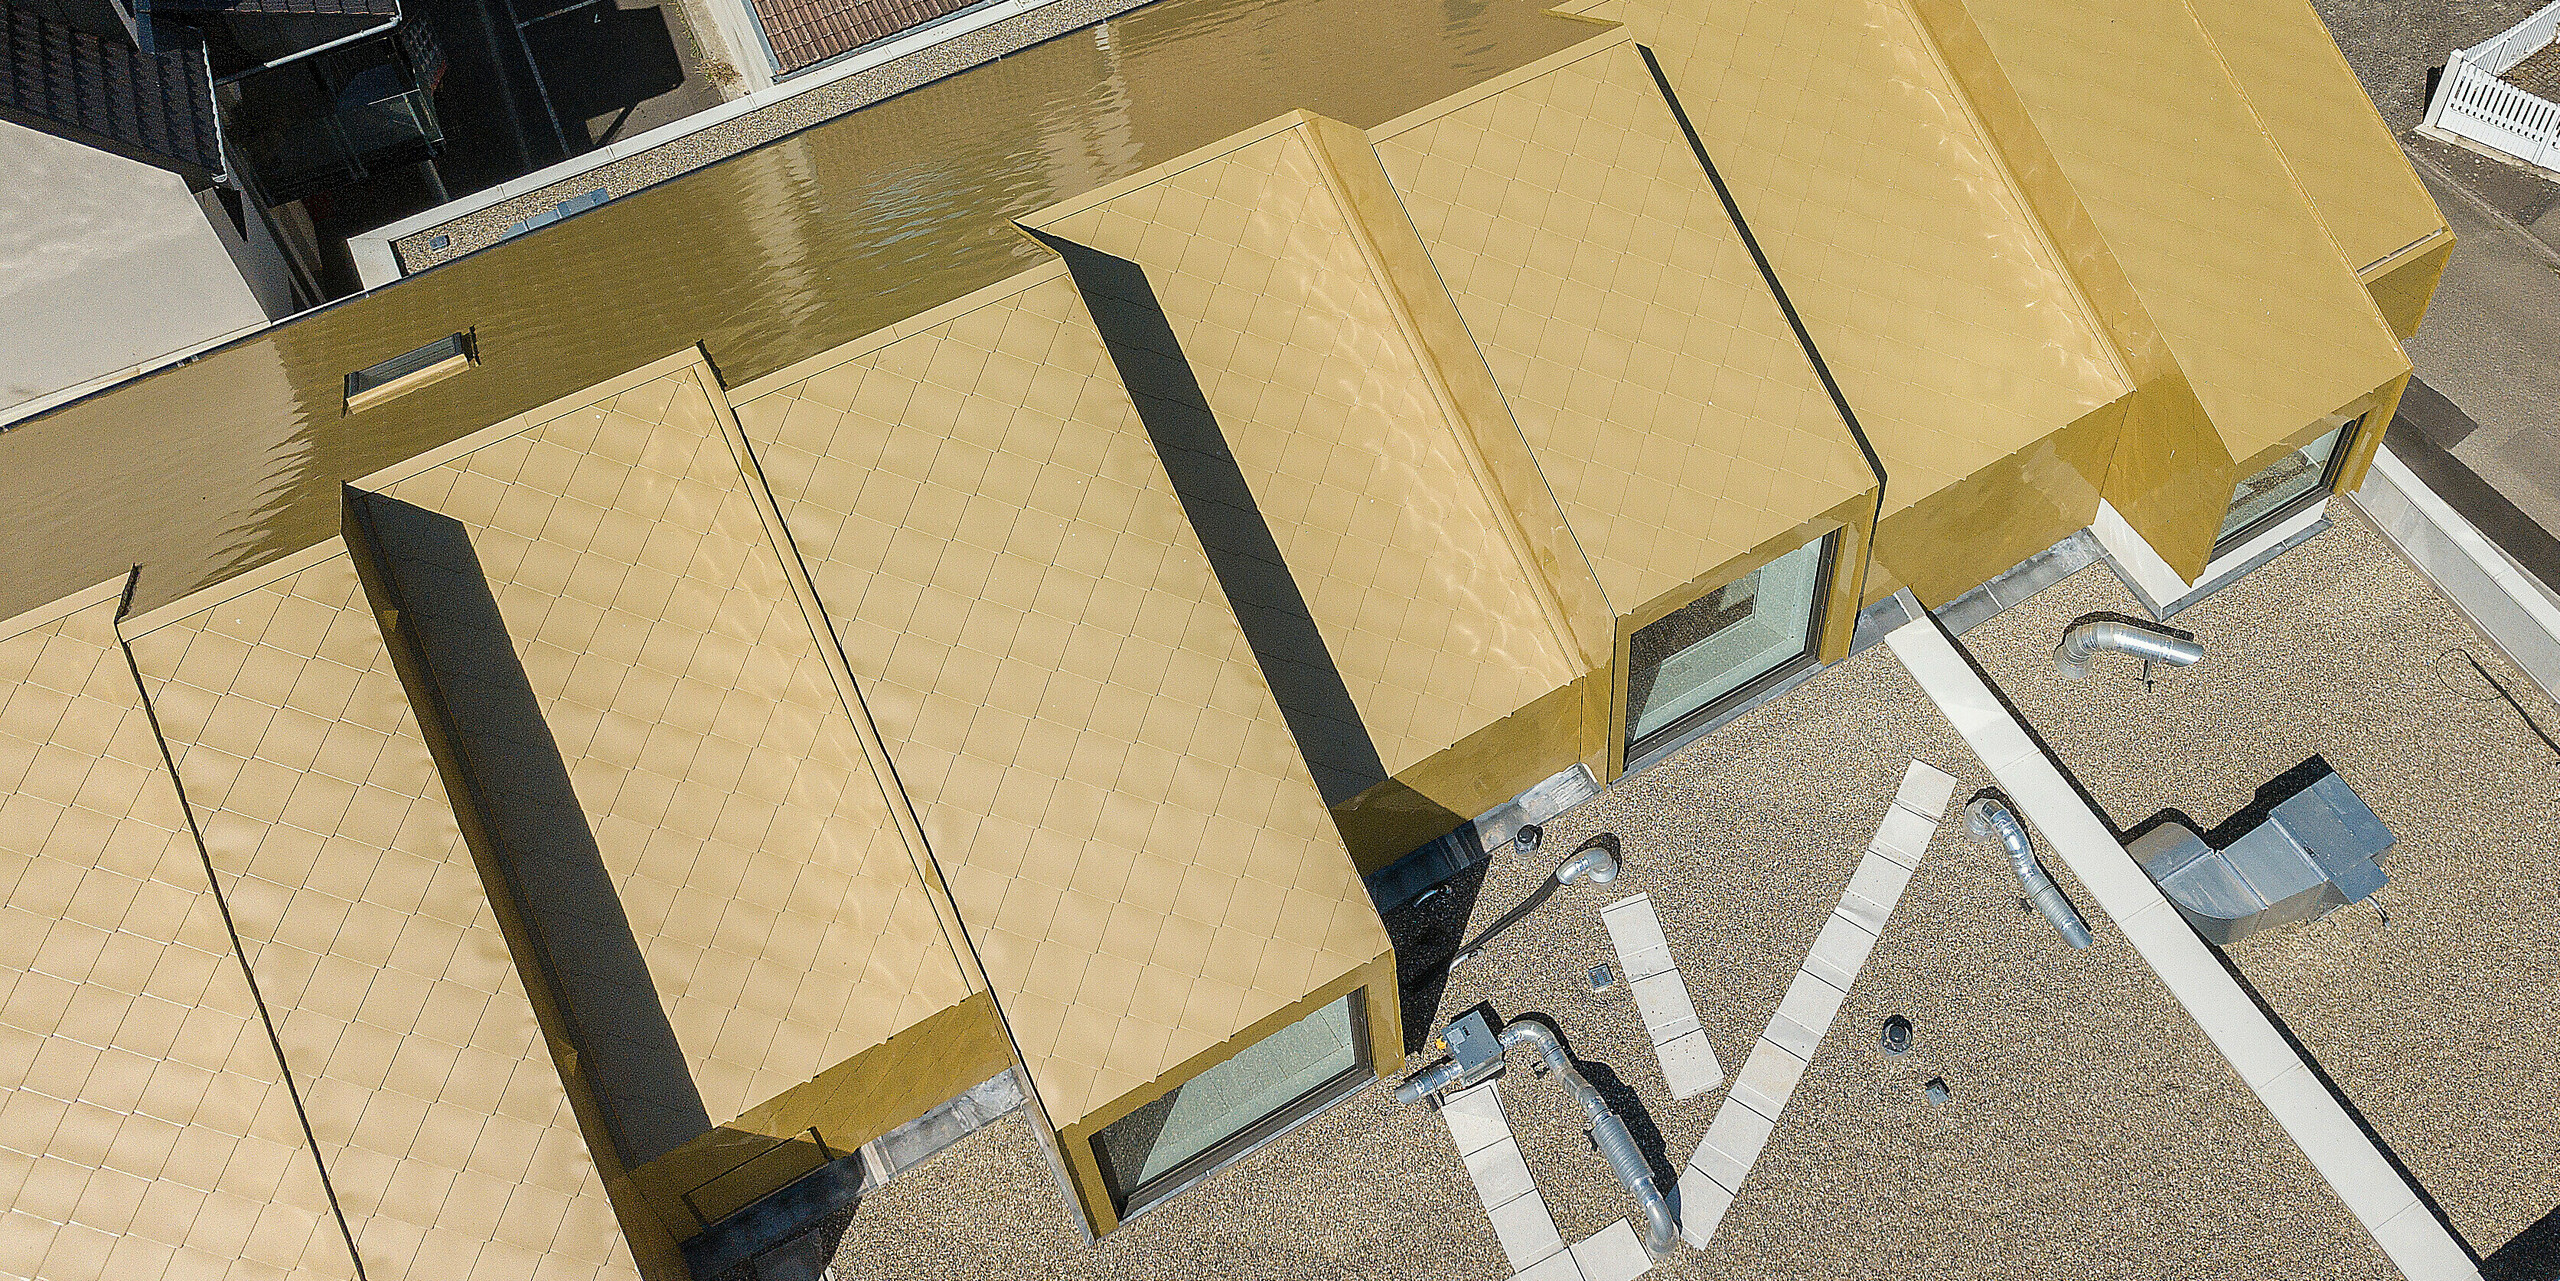 Blick von oben auf das goldene Dach des Kulturzentrums Fessenheim. Das neue Dach wurde mit PREFA Dachrauten 44 × 44 in Sparkling Gold verkleidet. Im Hintergrund sind benachbarte Gebäudedächer zu erkennen.